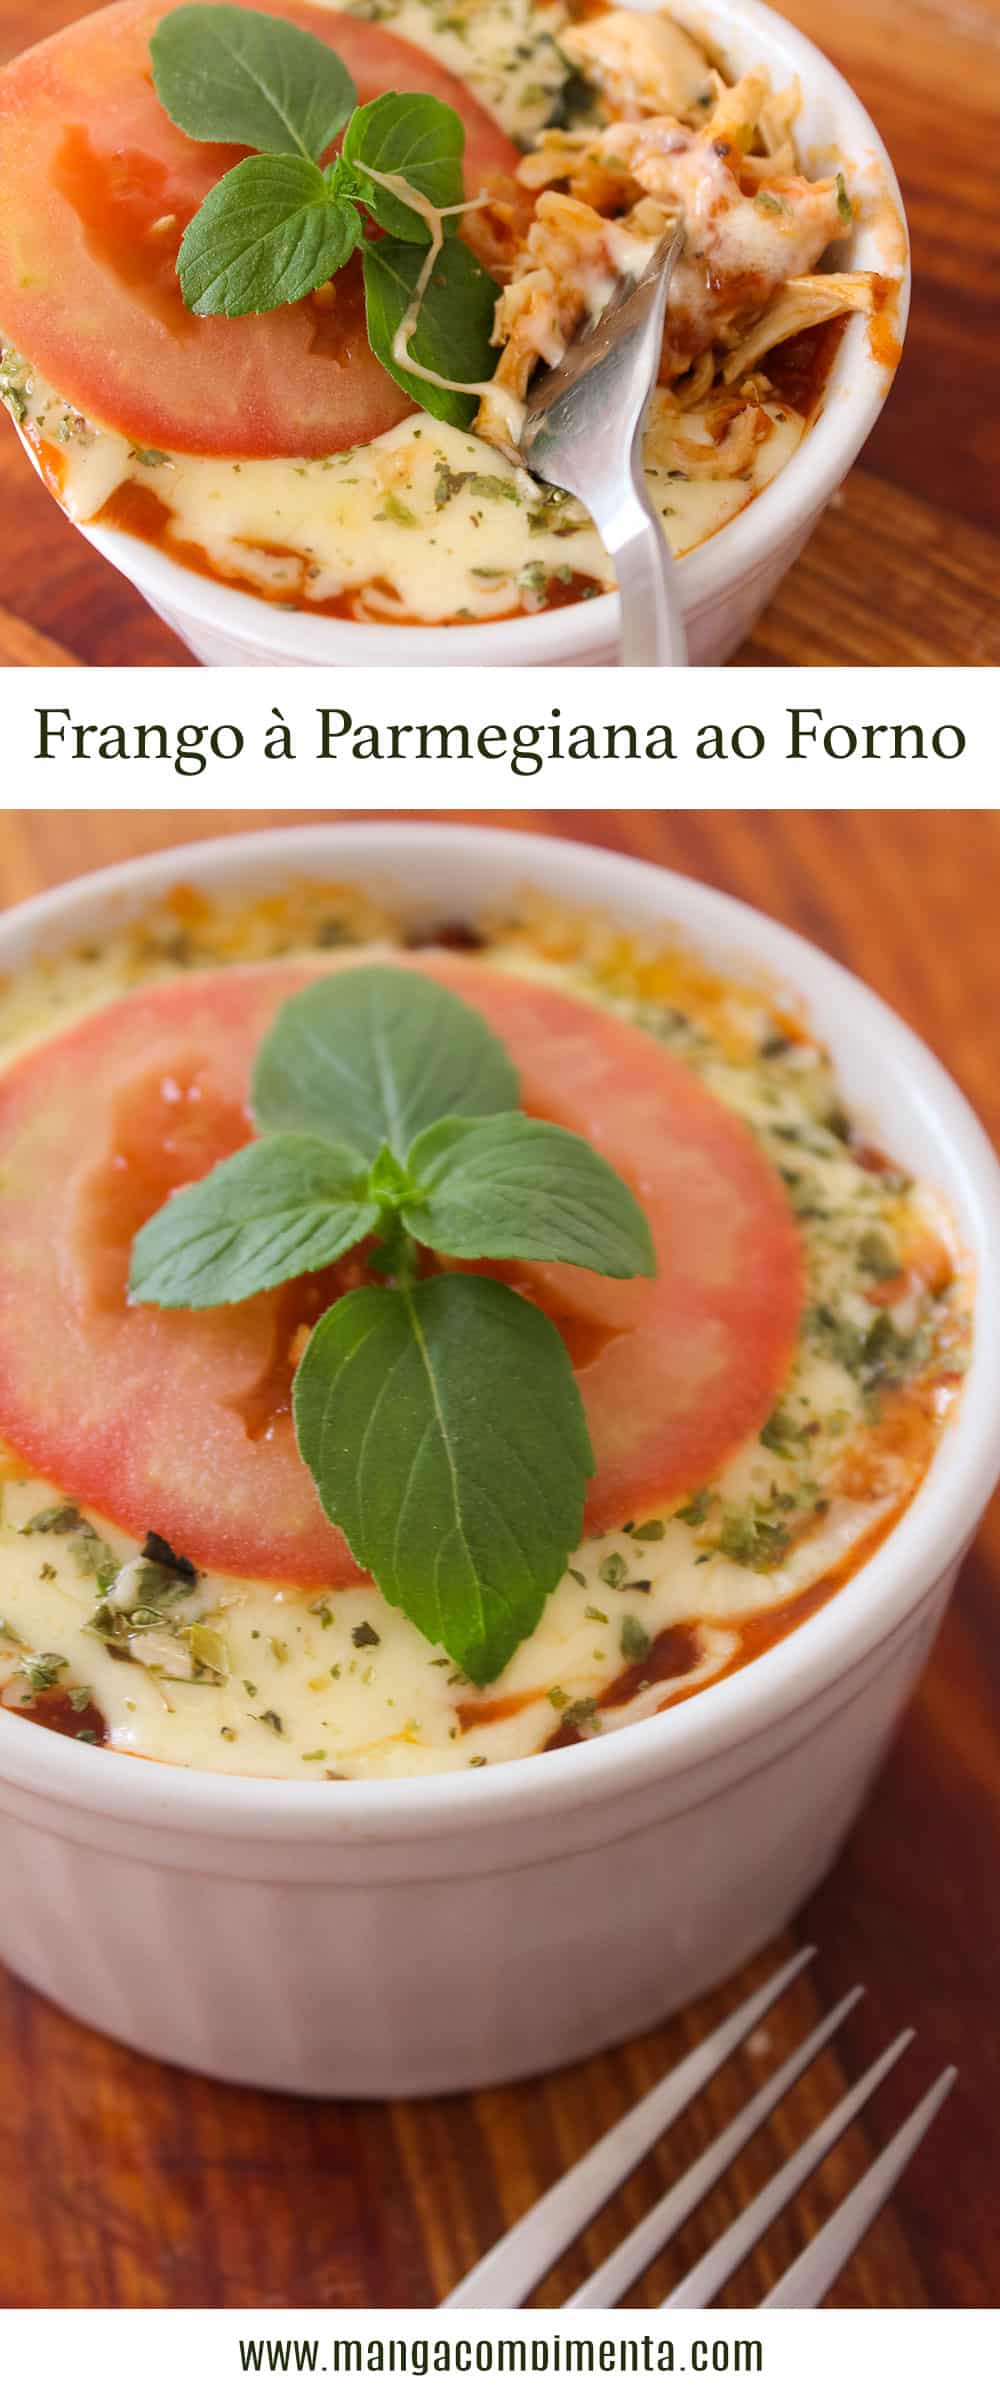 Frango à Parmegiana ao Forno - para um almoço especial durante a semana!